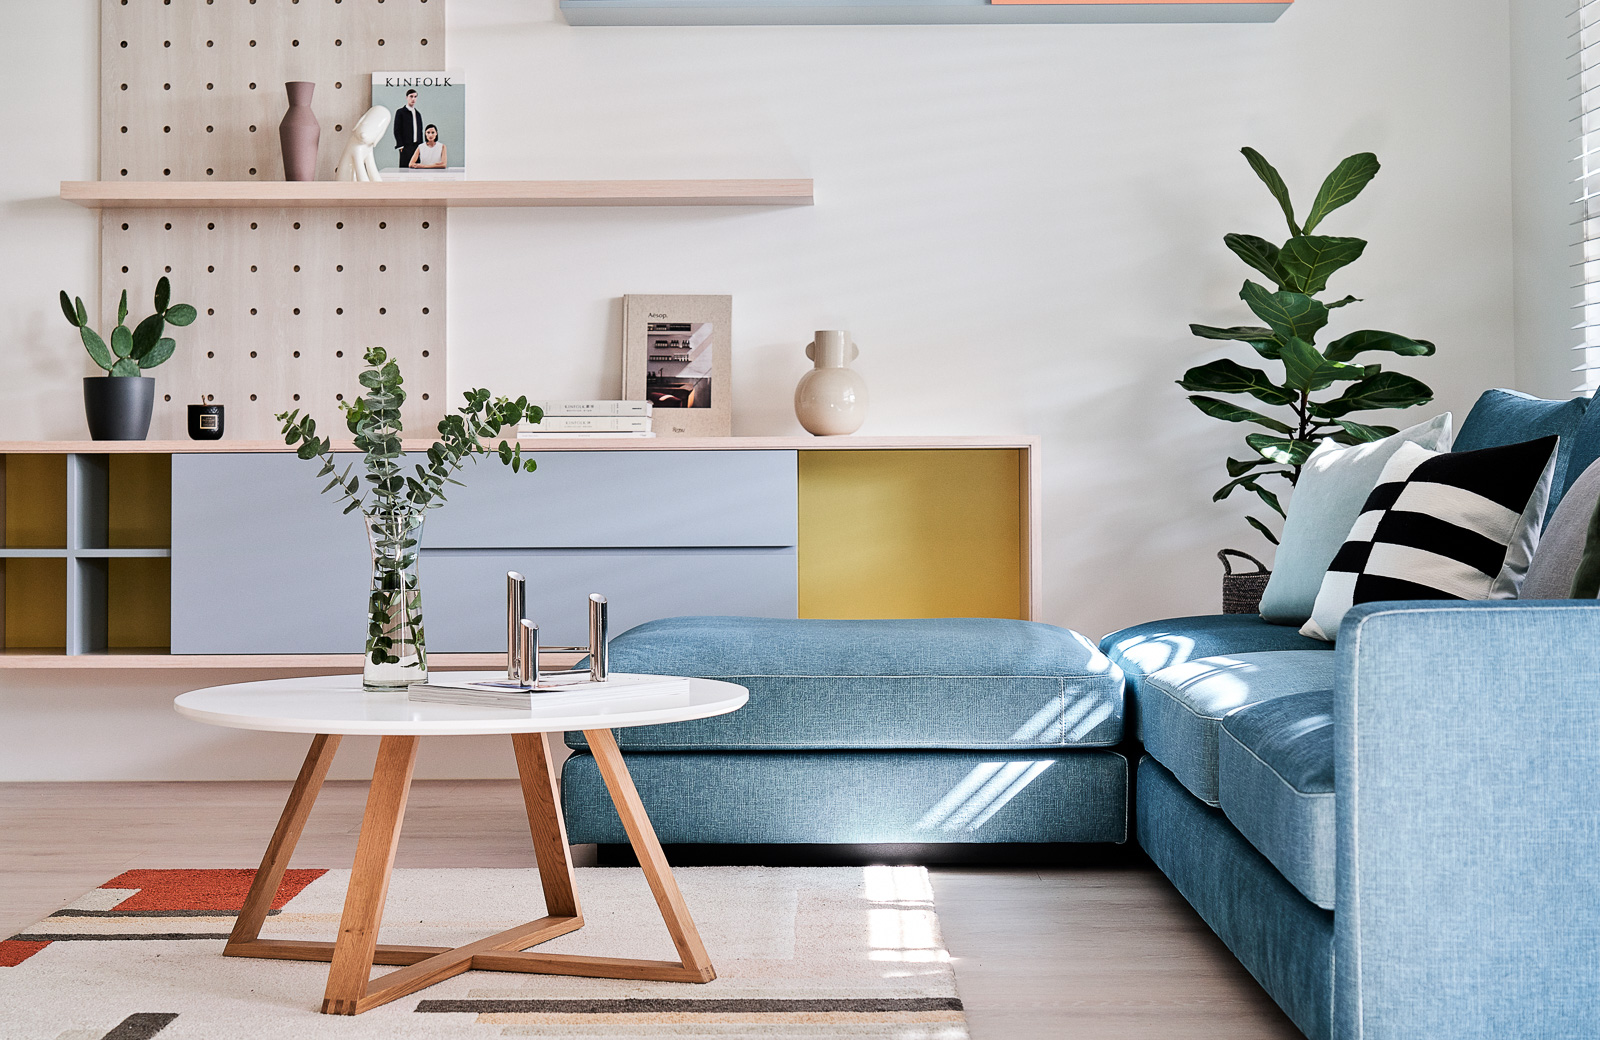 现代简约风格室内家装案例效果图-客厅沙发茶几